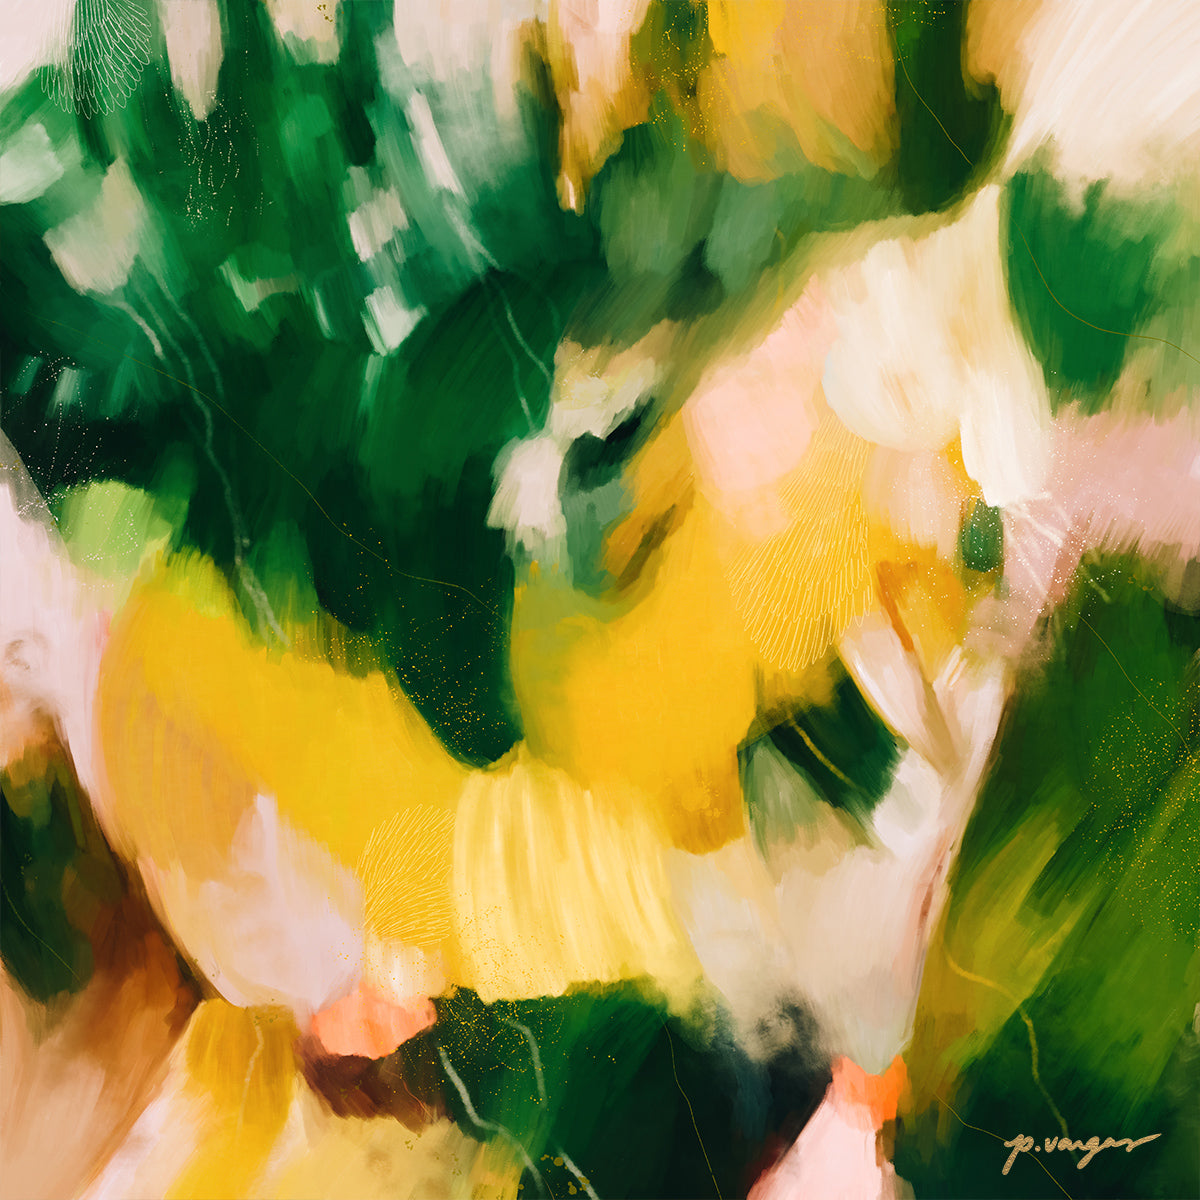 La Selva - Tropical abstract art print by Parima Studio